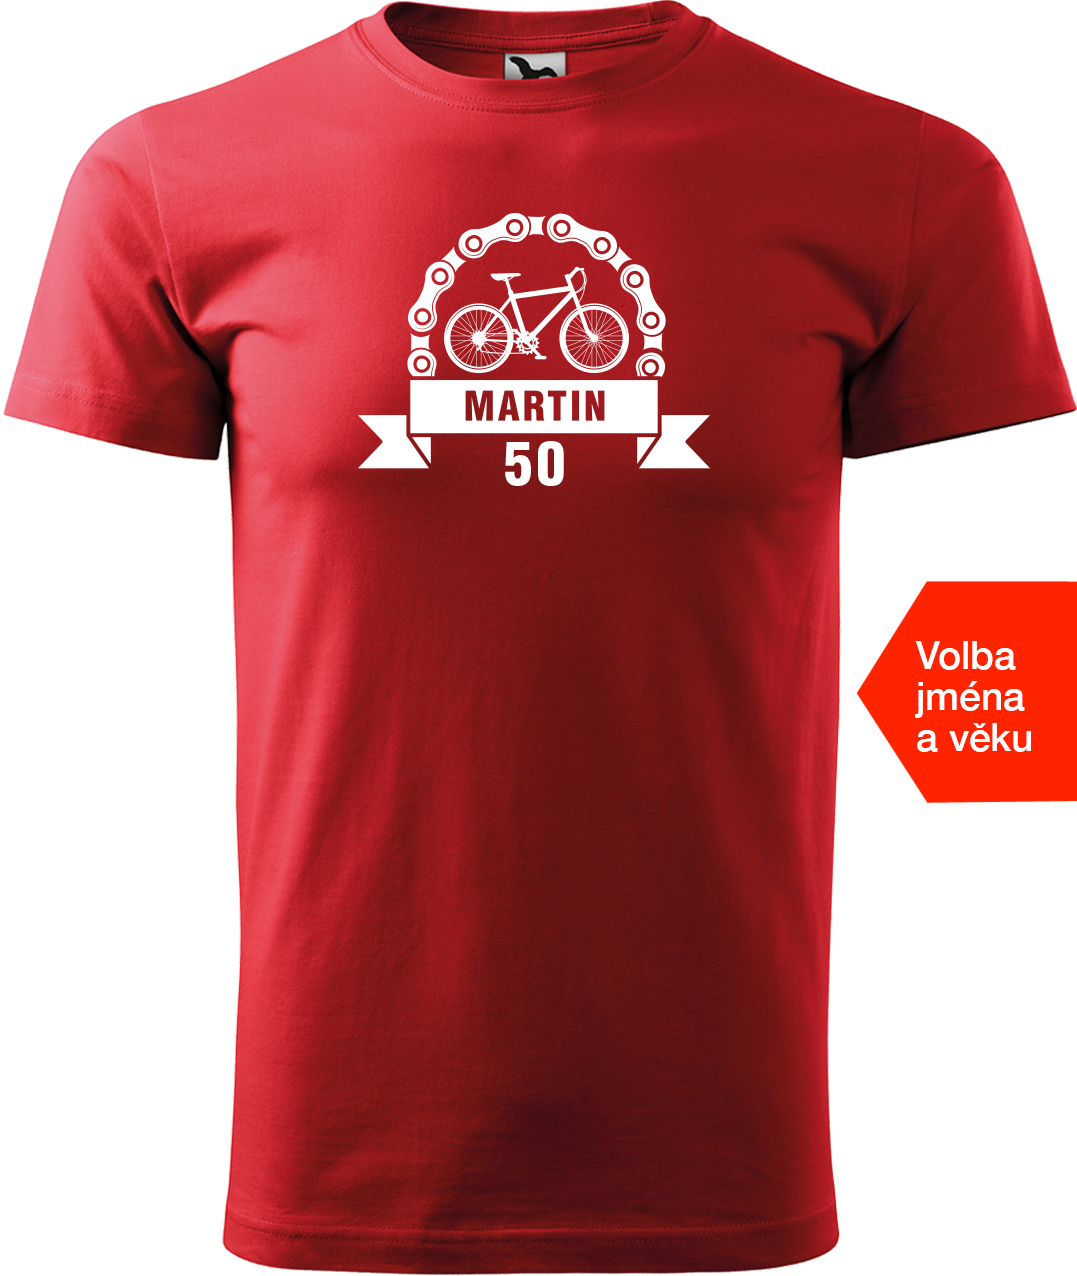 Pánské tričko pro cyklistu se jménem a věkem - Blahopřání Velikost: 4XL, Barva: Červená (07)